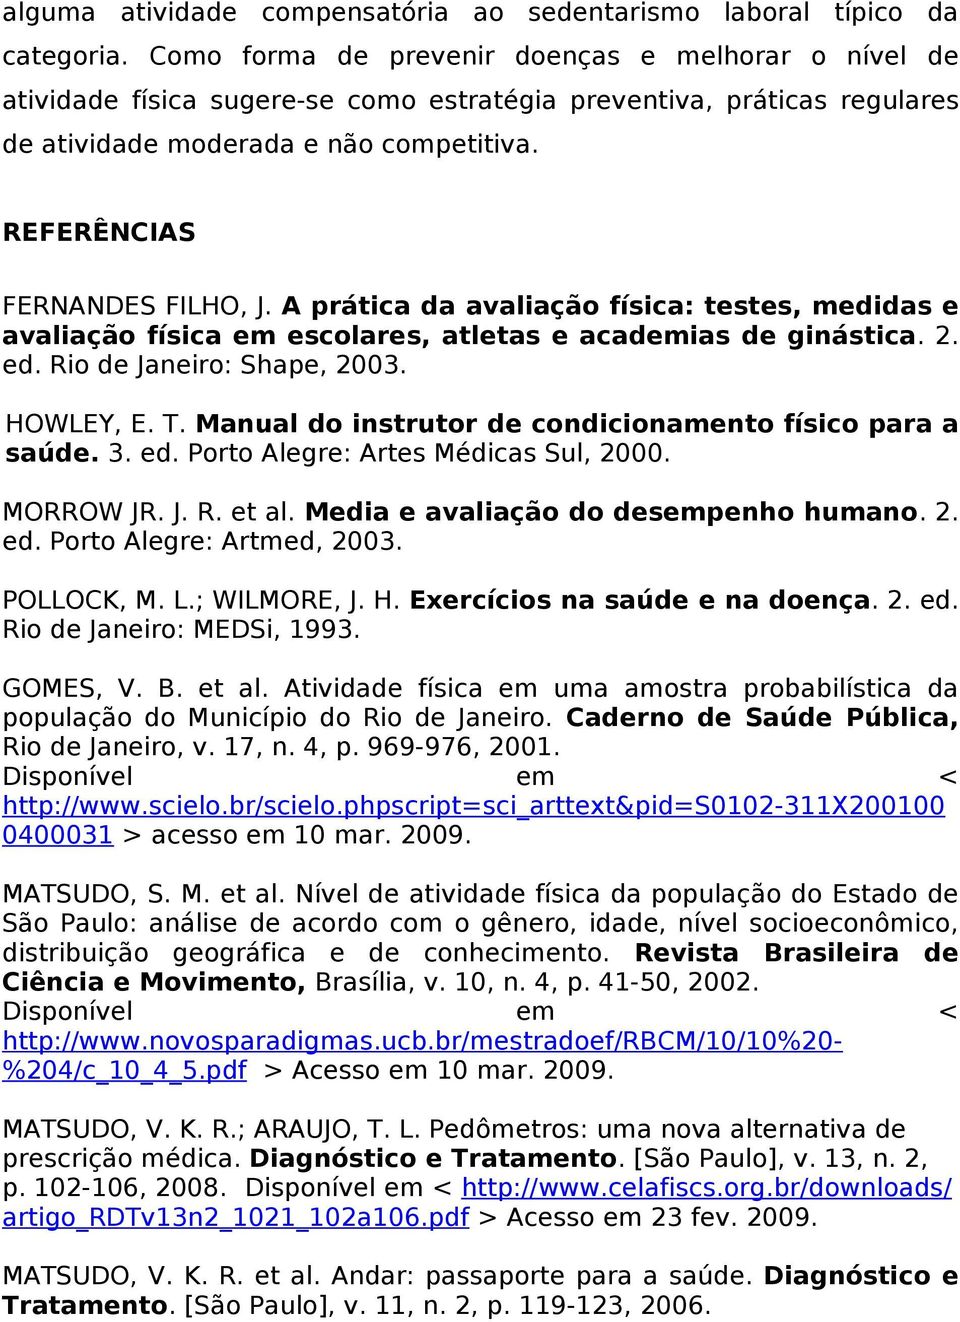 A prática da avaliação física: testes, medidas e avaliação física em escolares, atletas e academias de ginástica. 2. ed. Rio de Janeiro: Shape, 2003. HOWLEY, E. T.